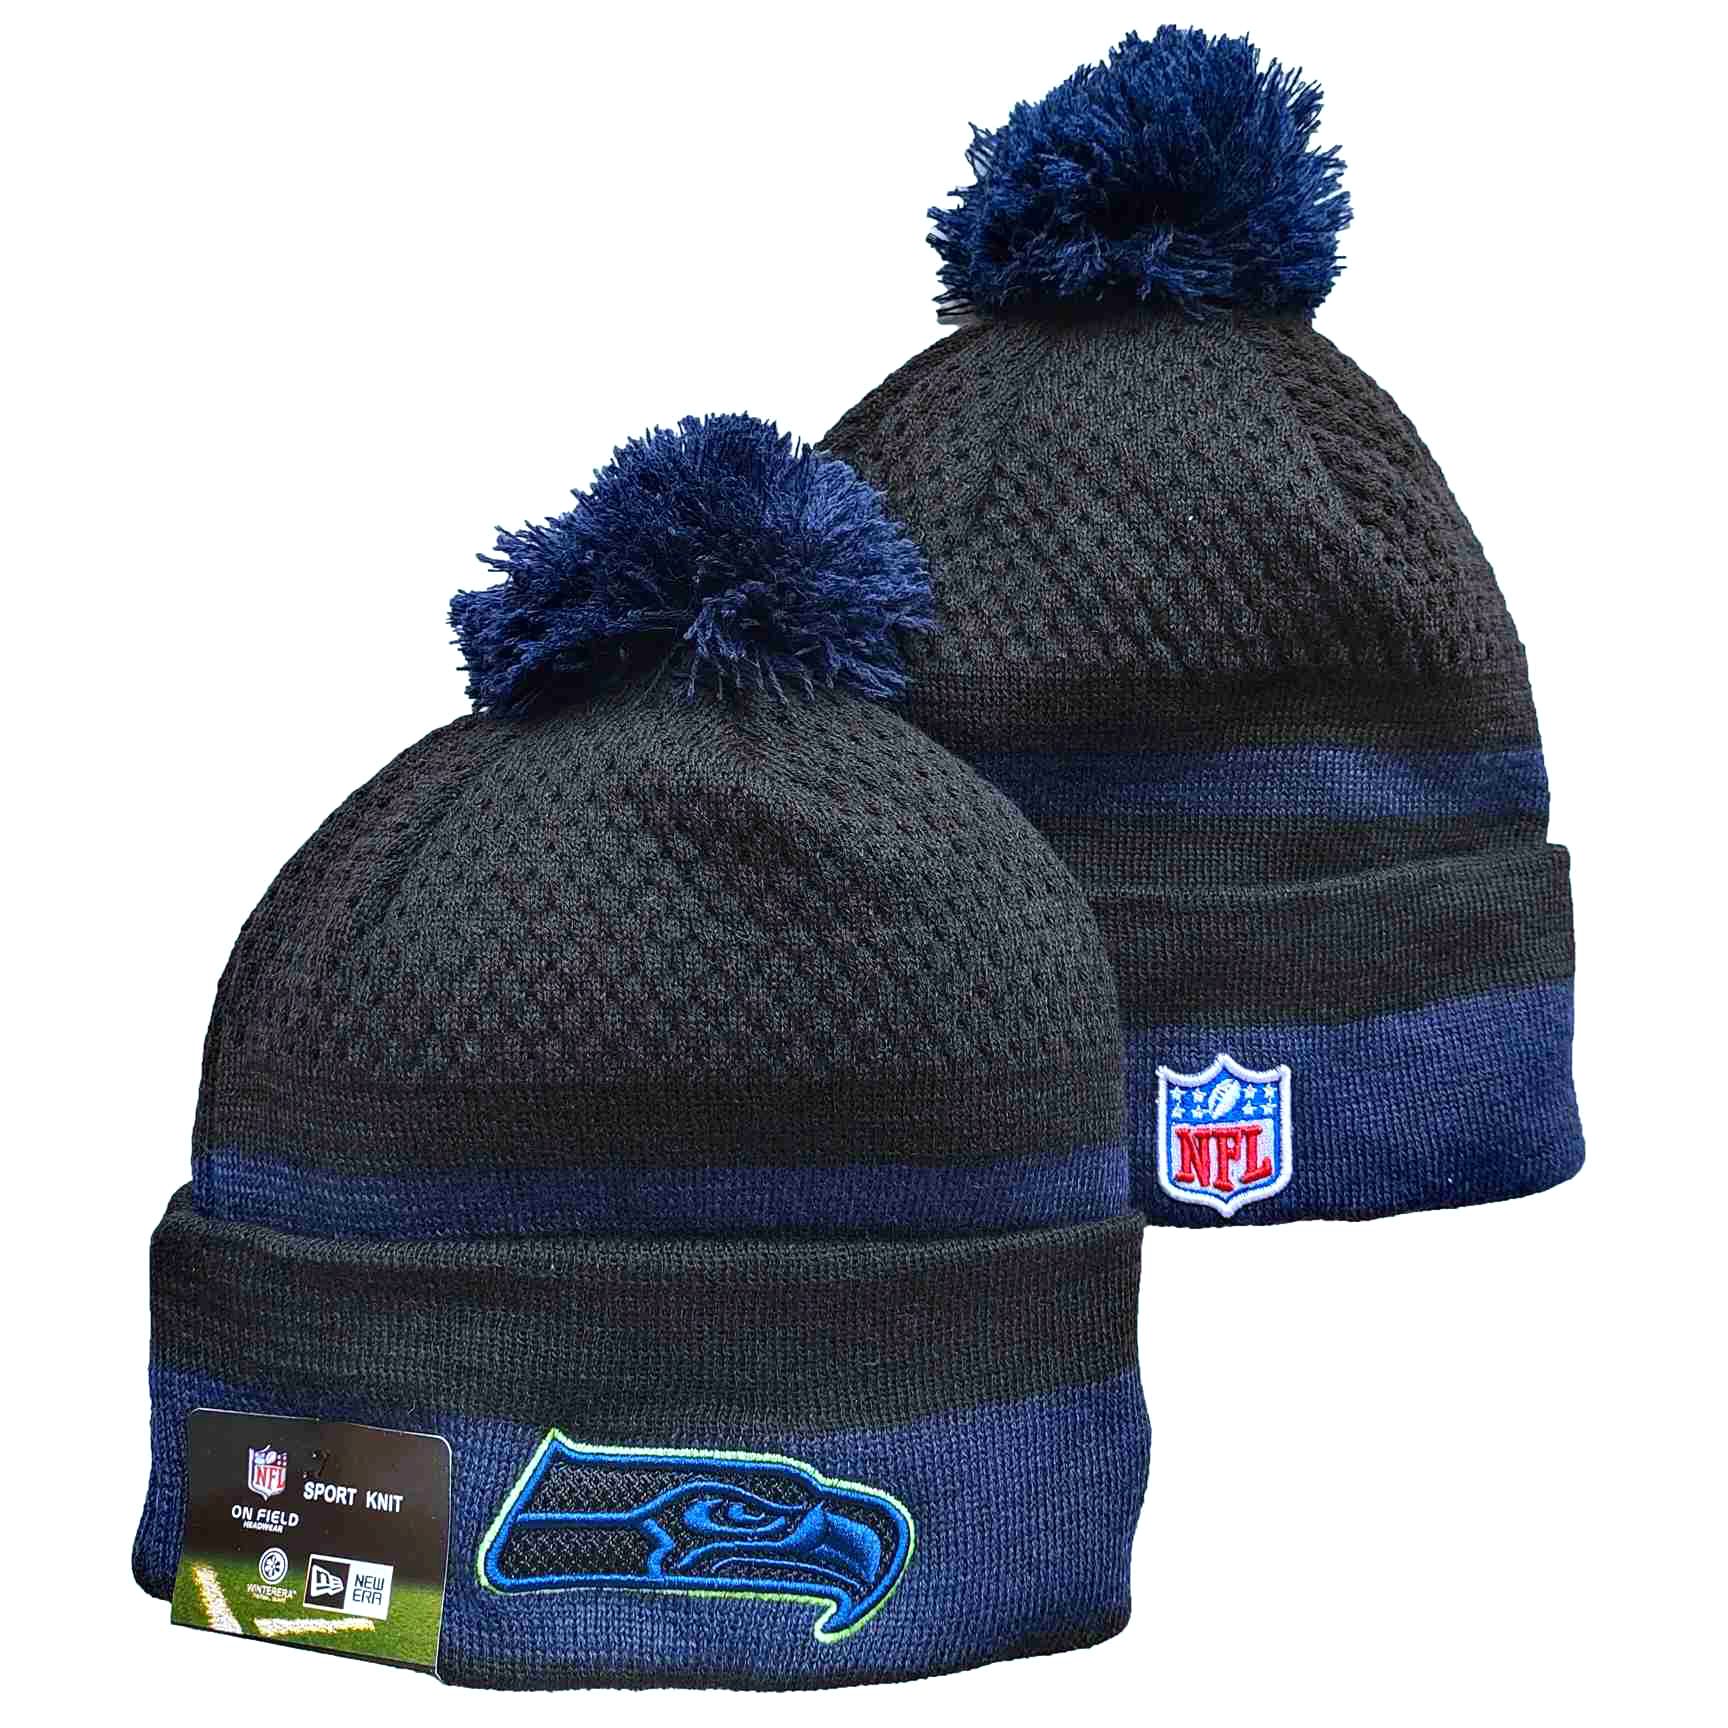 NFL Seattle Seahawks Beanies Knit Hats-YD1220